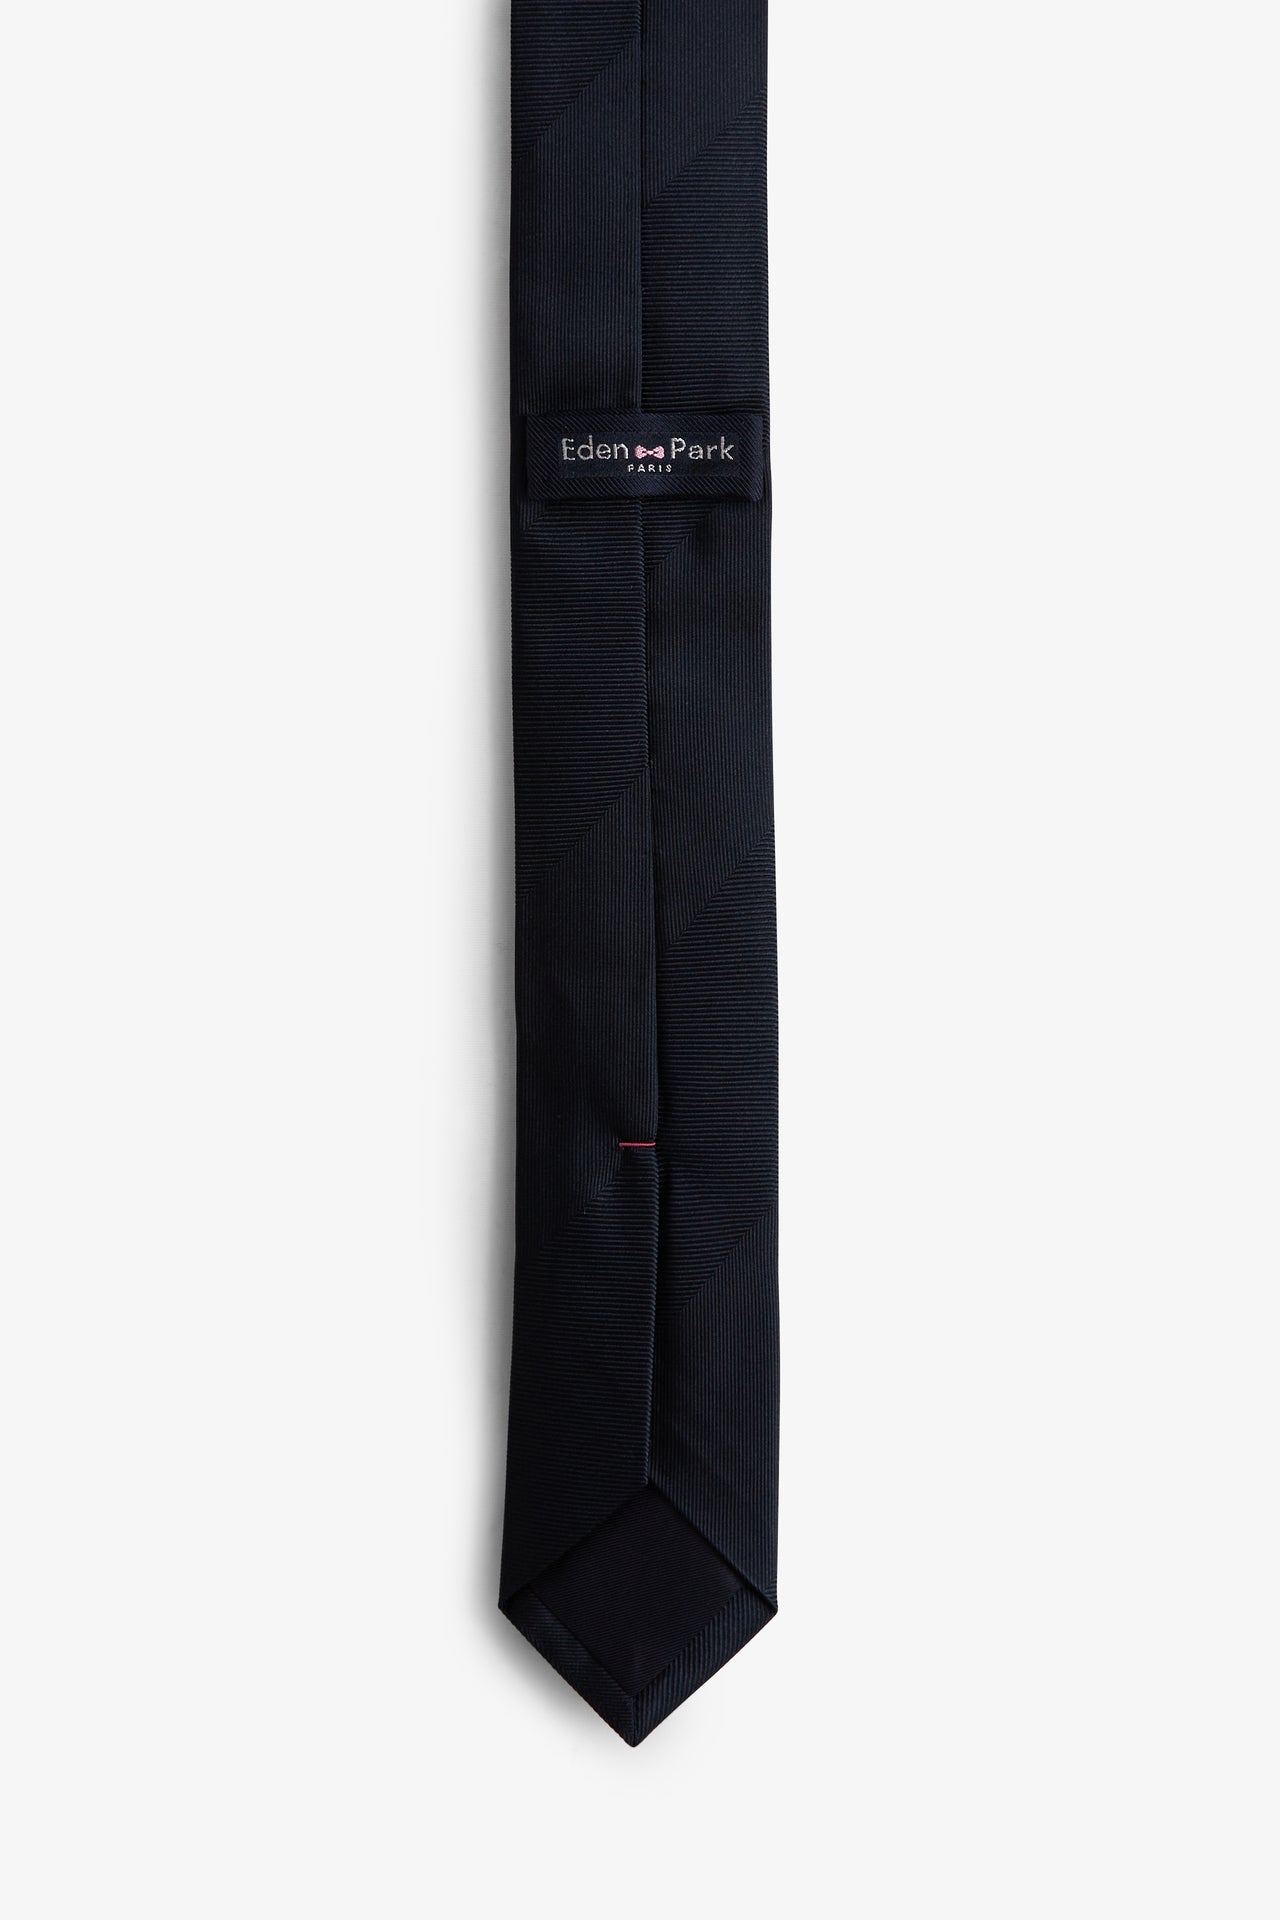 Cravate marine unie - Image 2